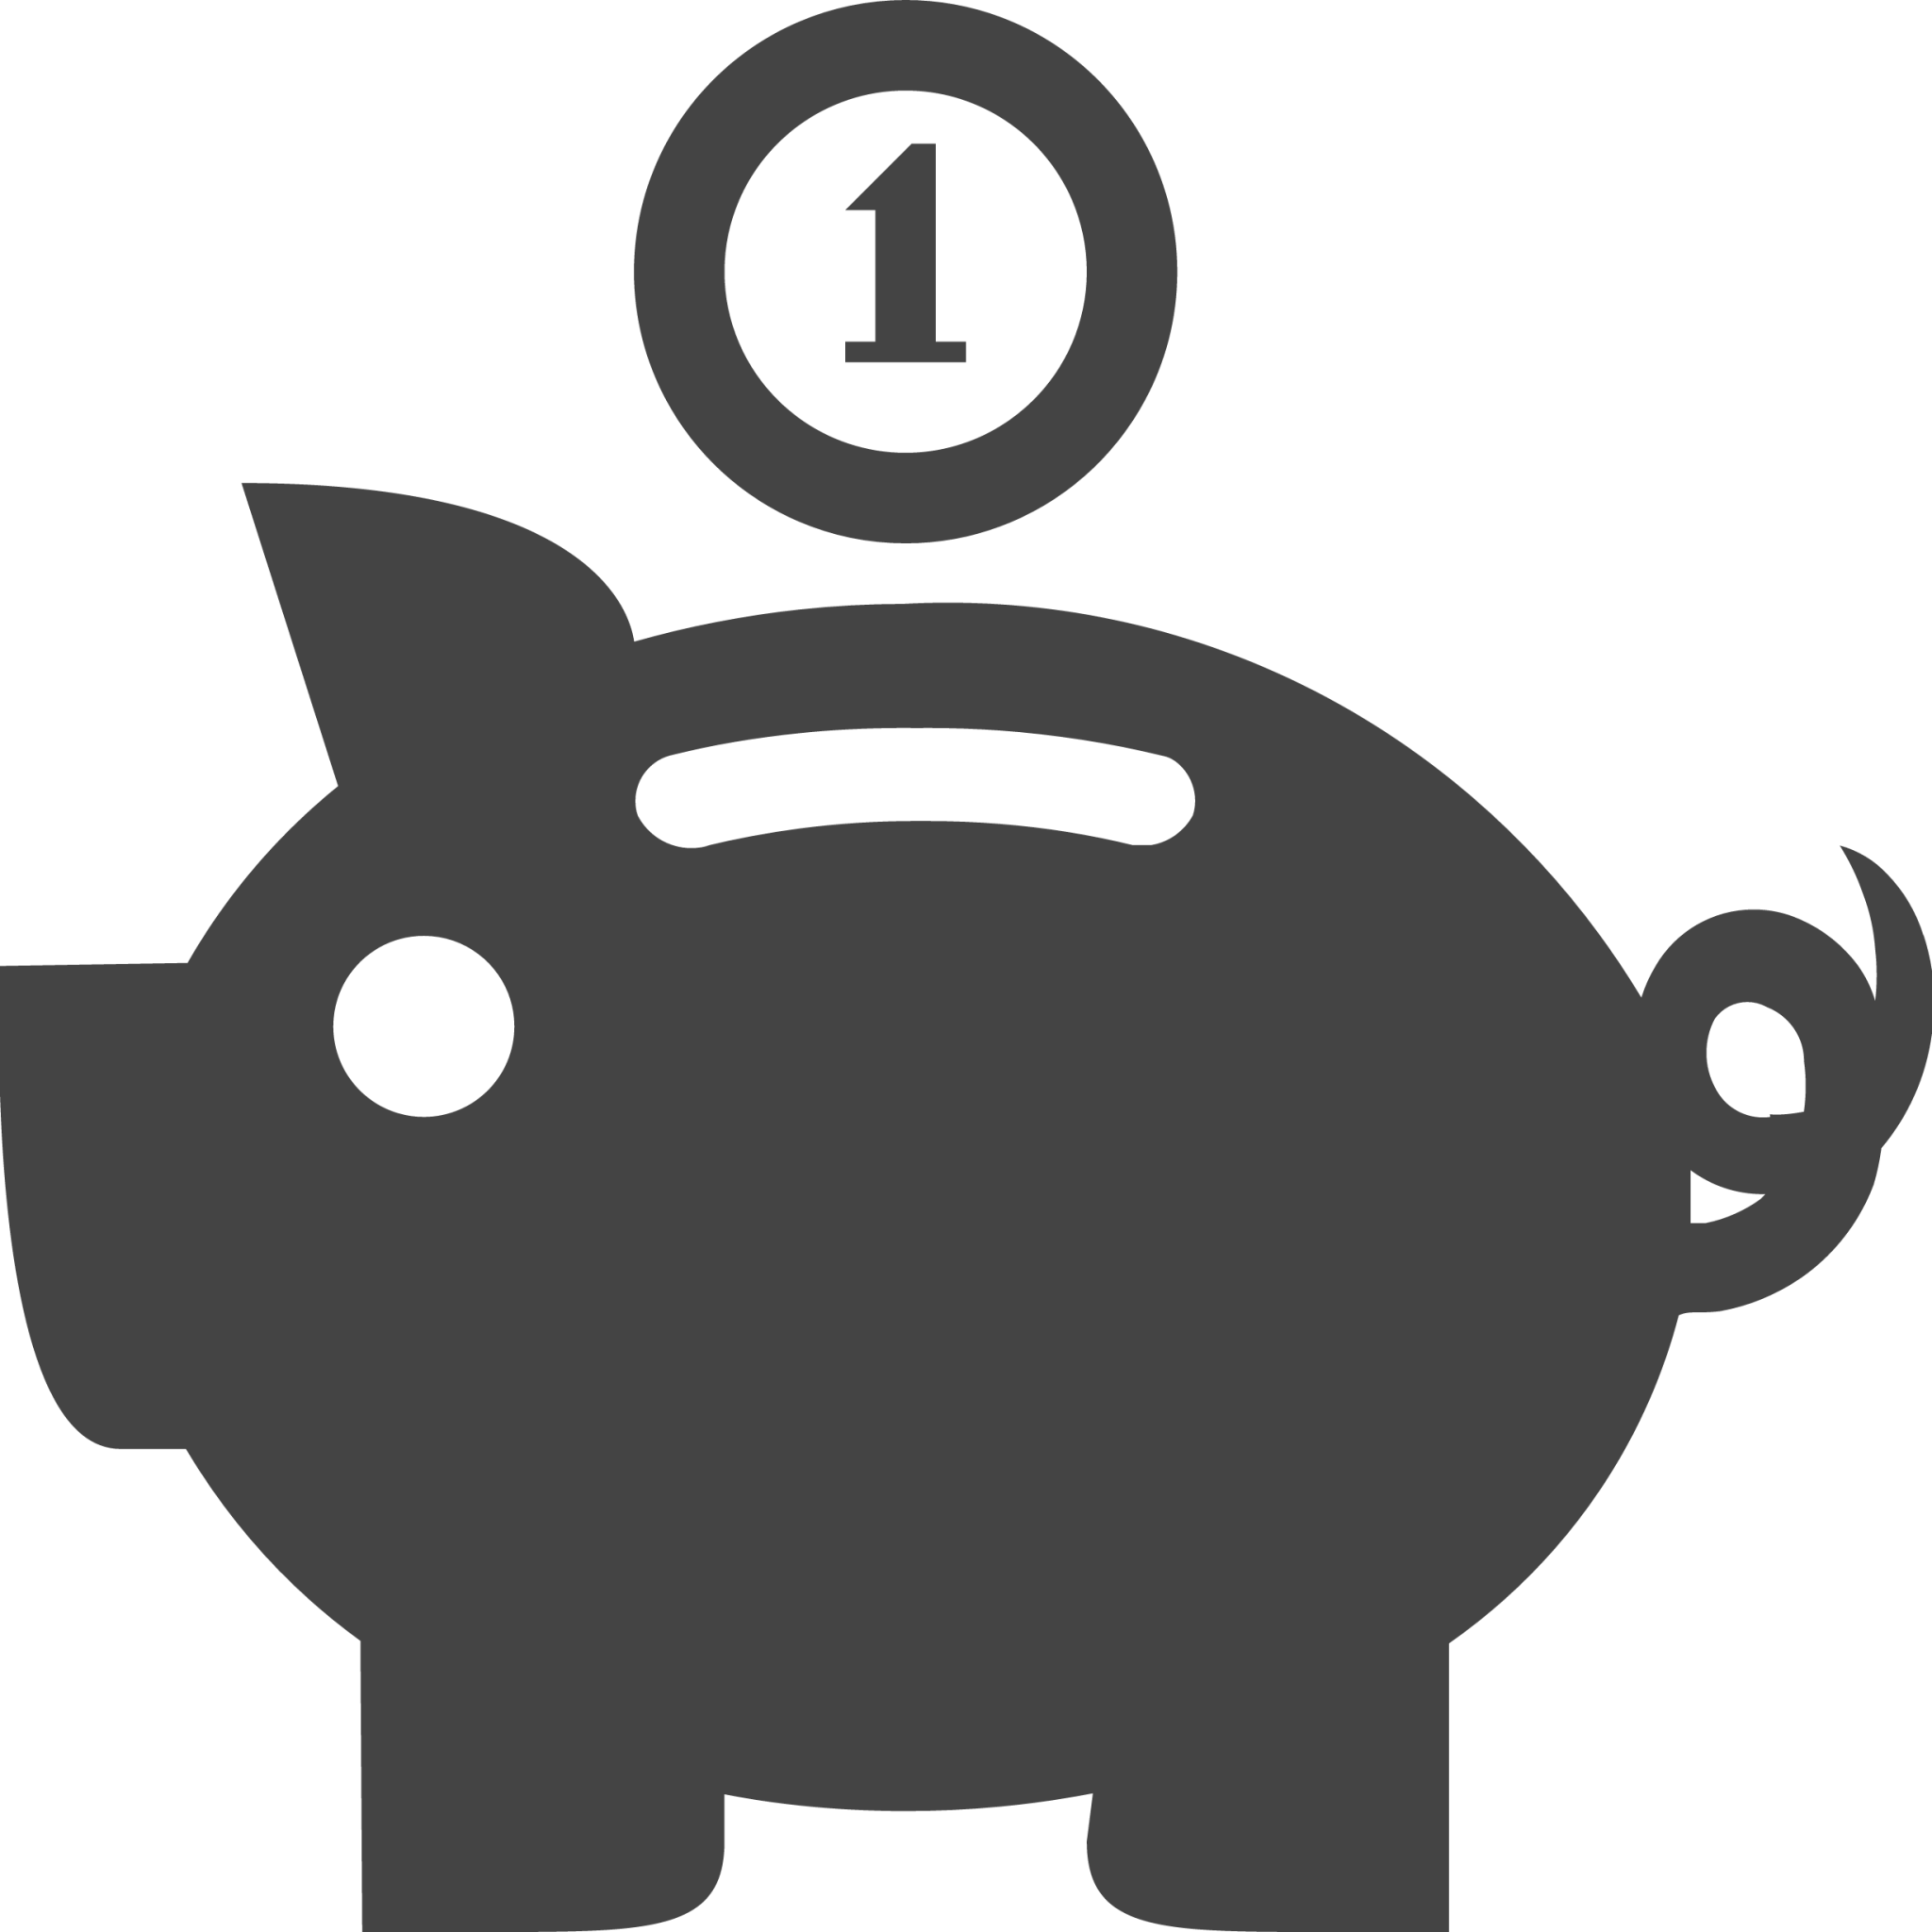 piggy bank coin icon